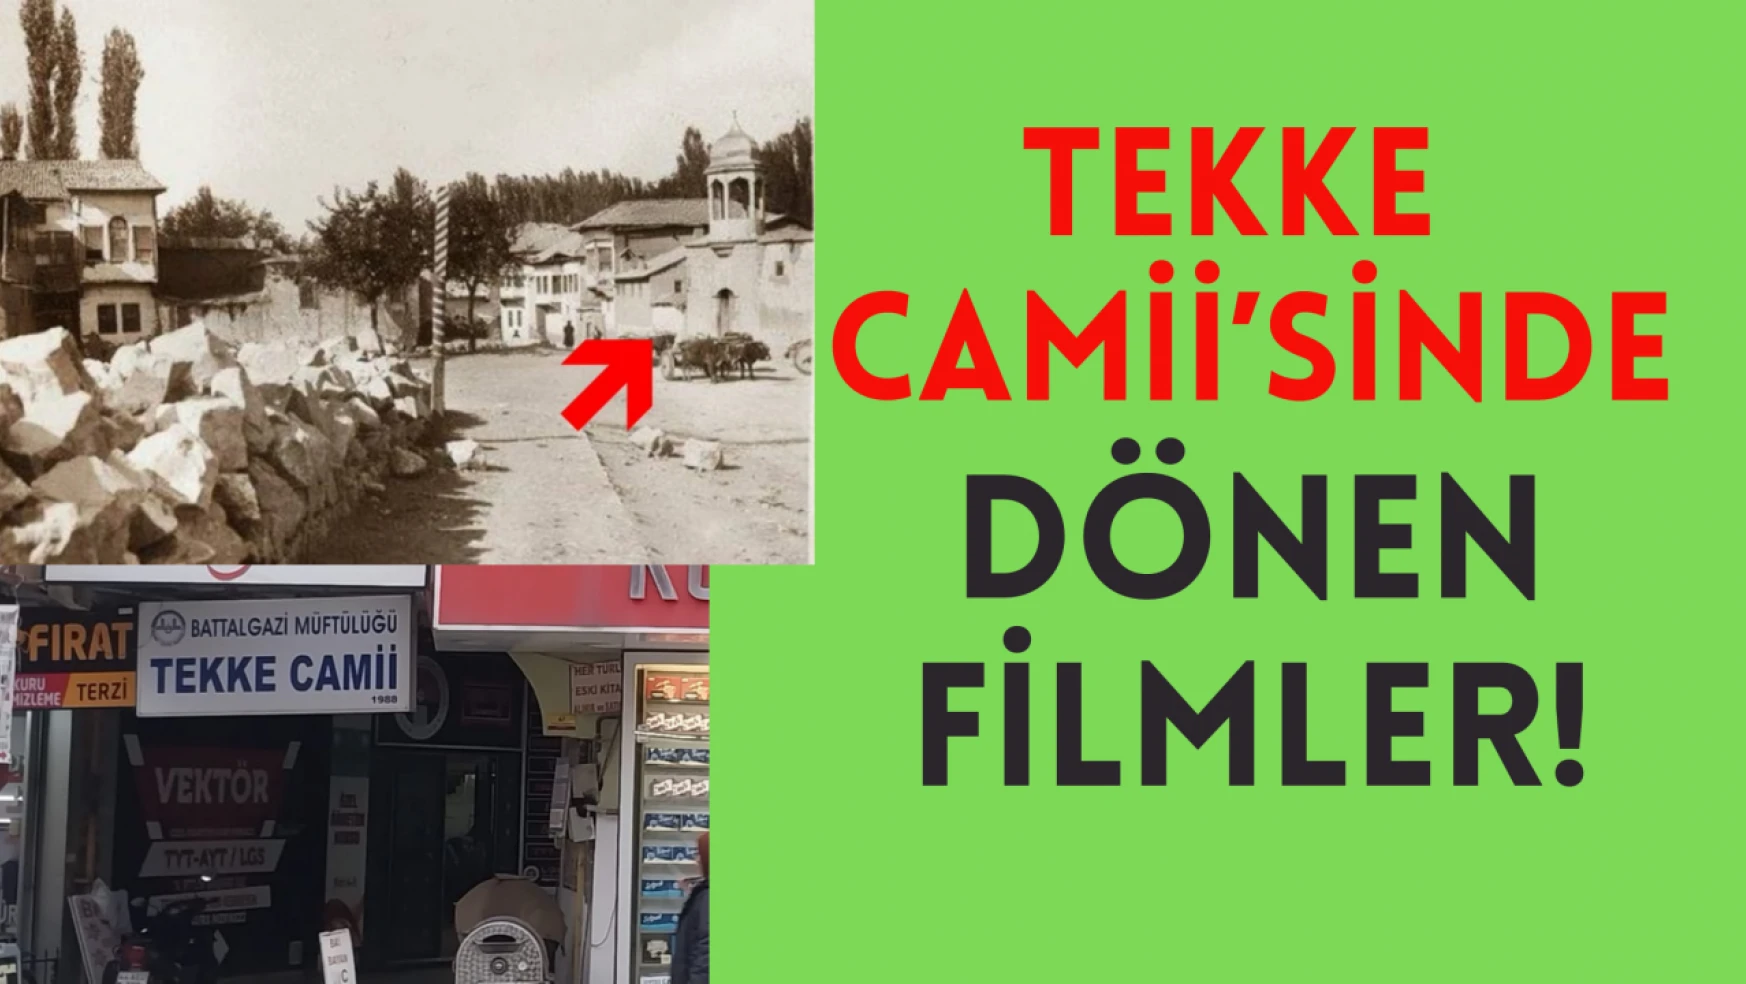 Tekke Camii'sinde dönen filmler!